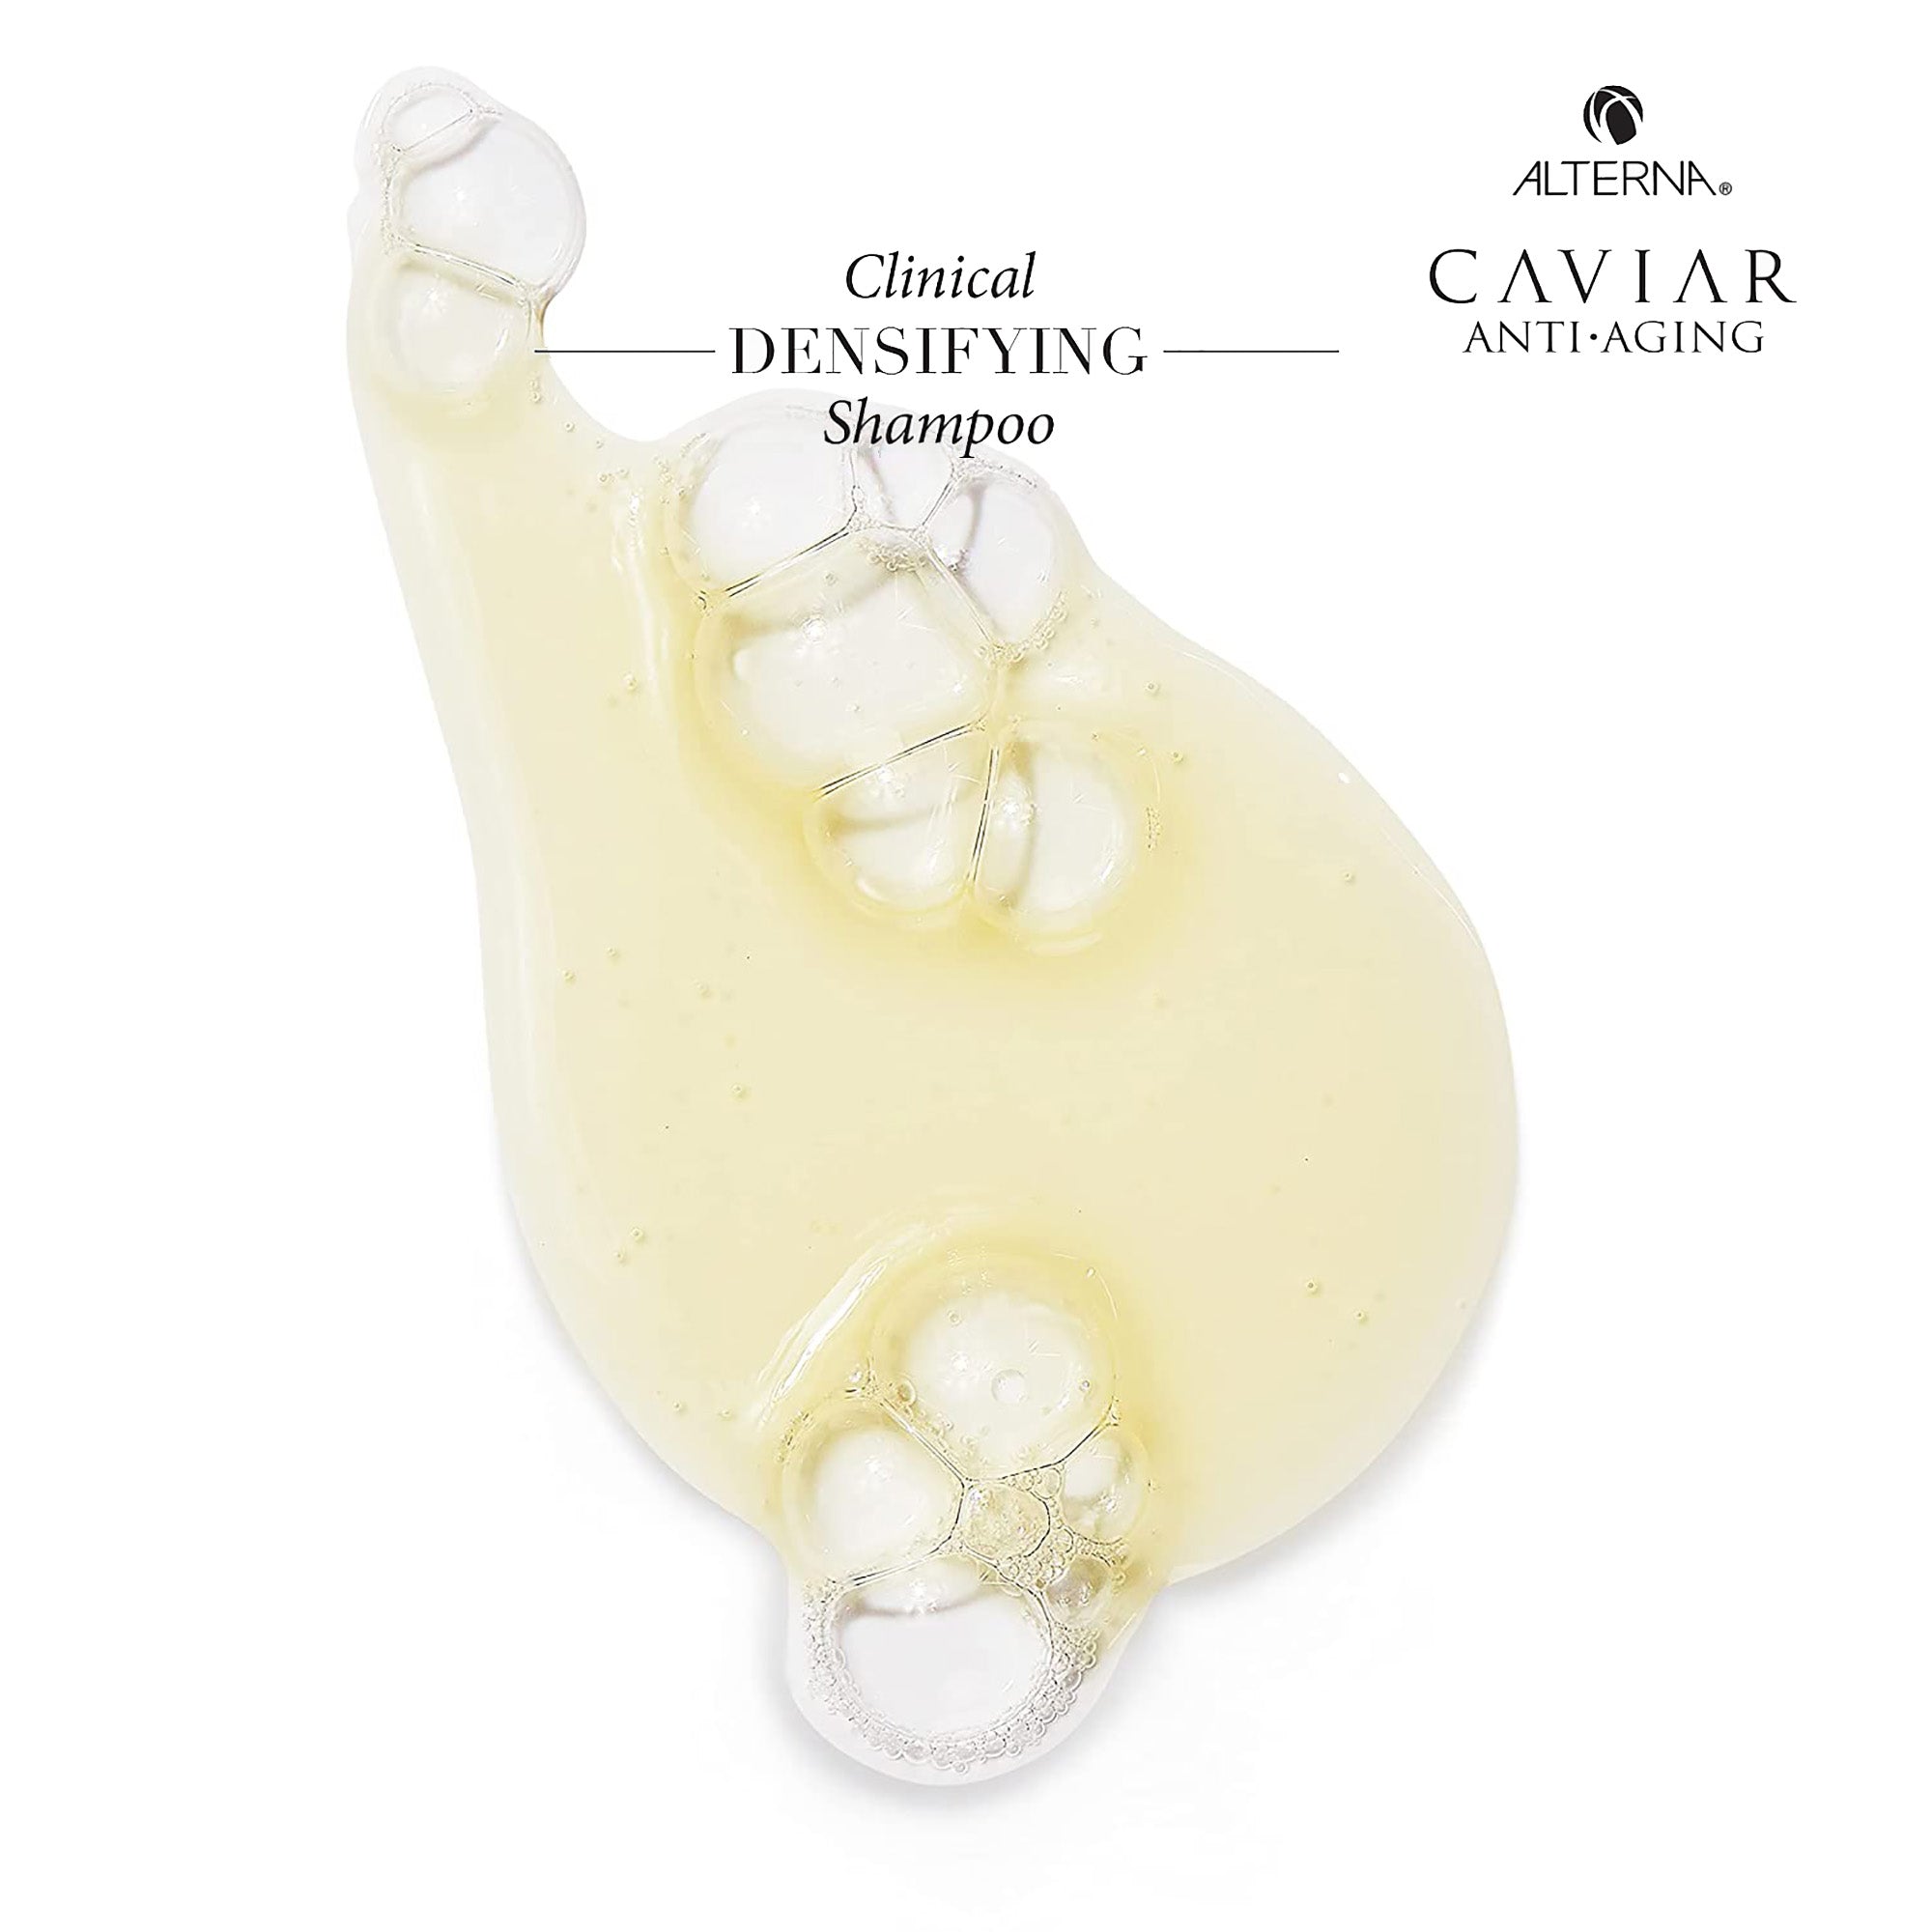 Alterna Caviar Anti-Aging Clinical Densifying Shampoo / 8.5OZ